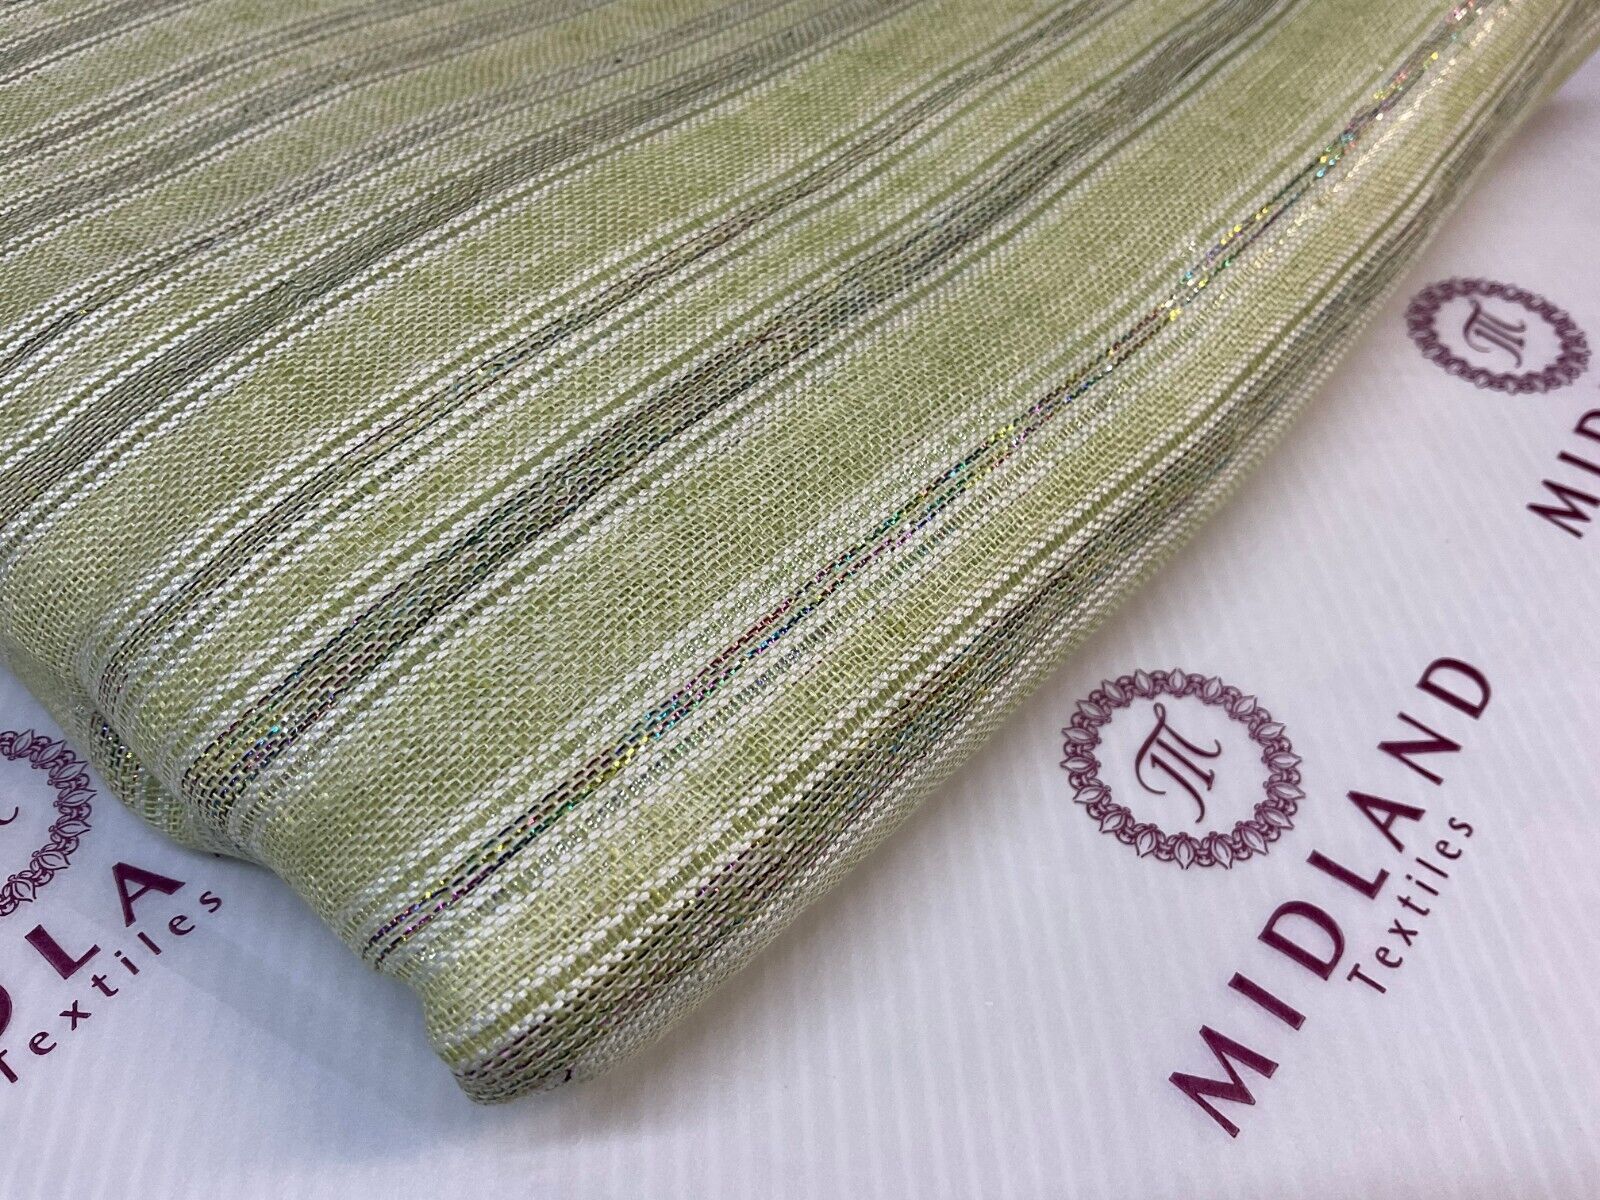 Stripped Handloom Linen dress Fabric 114cm wide M1771